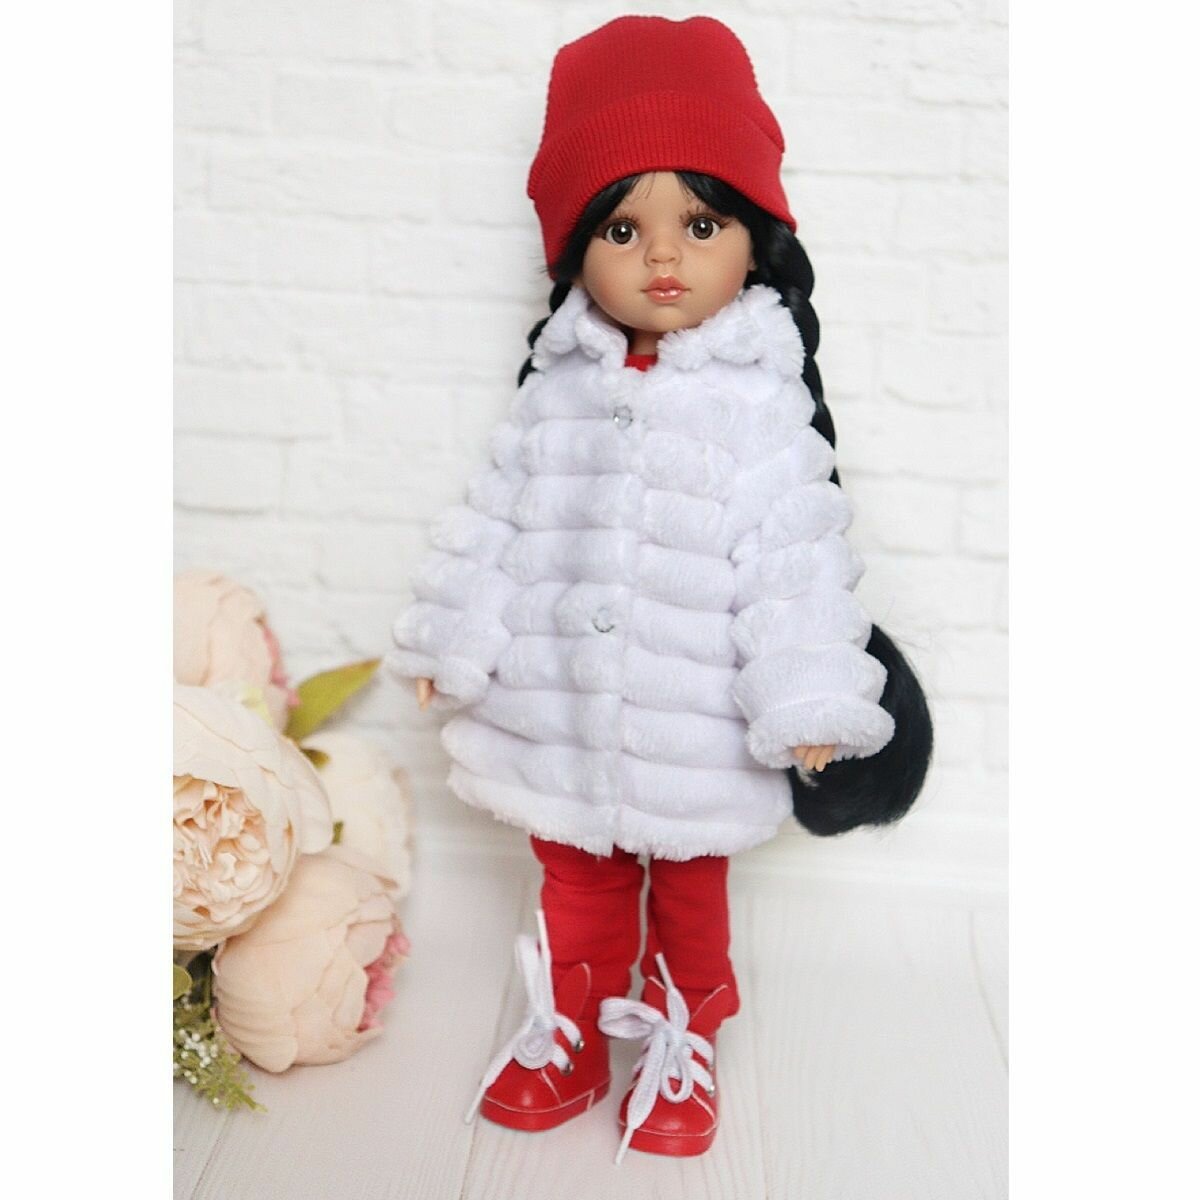 Комплект одежды и обуви для кукол Paola Reina 32 см (шубка полоска, костюм, шапка, кеды), белый, красный